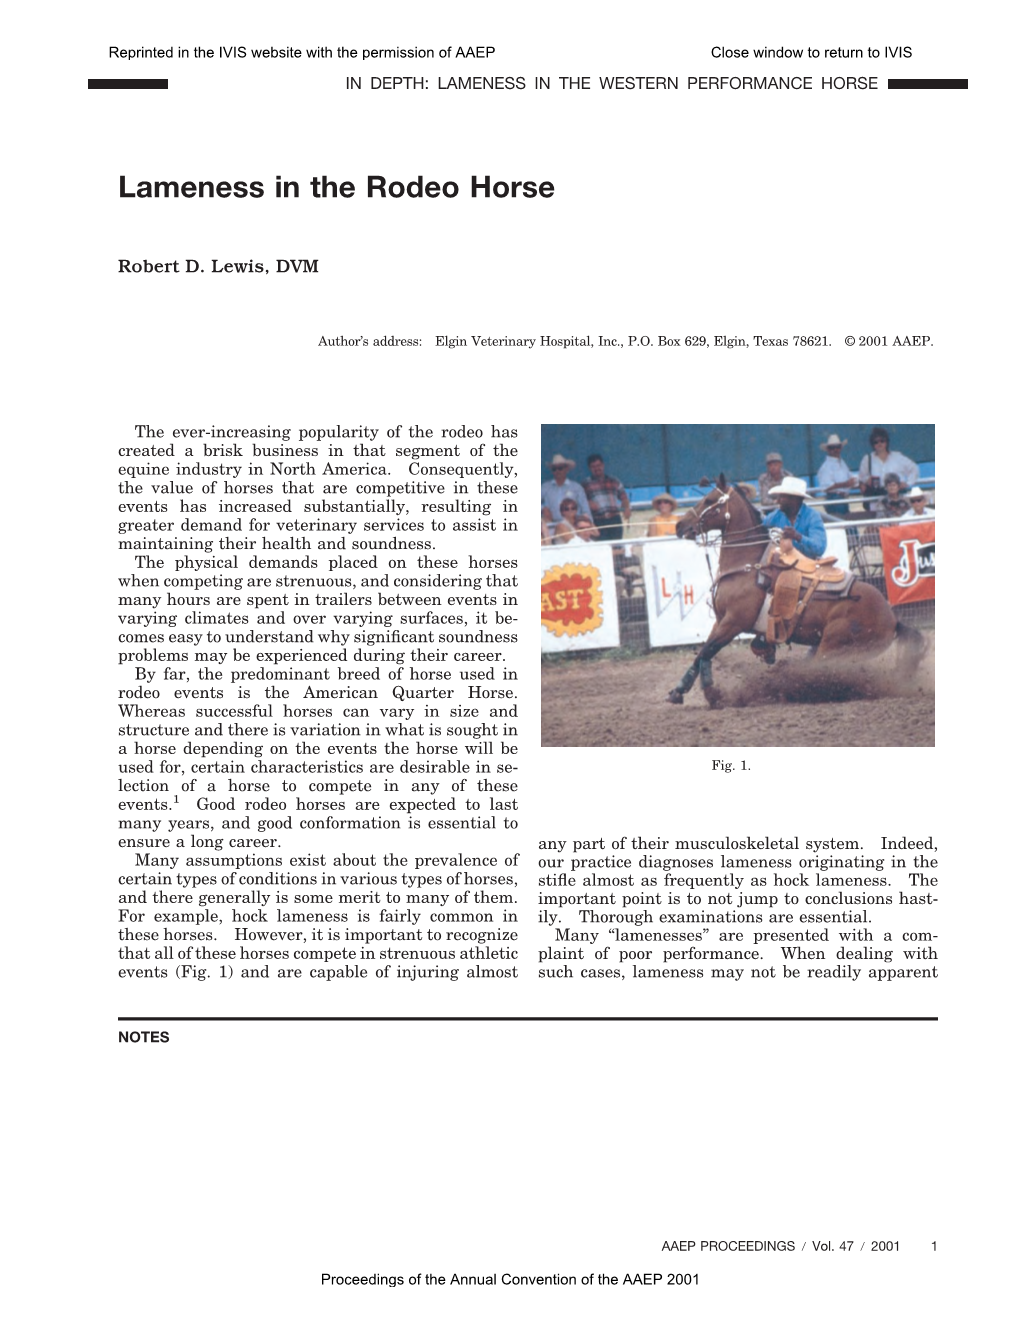 Lameness in the Western Pleasure Horse